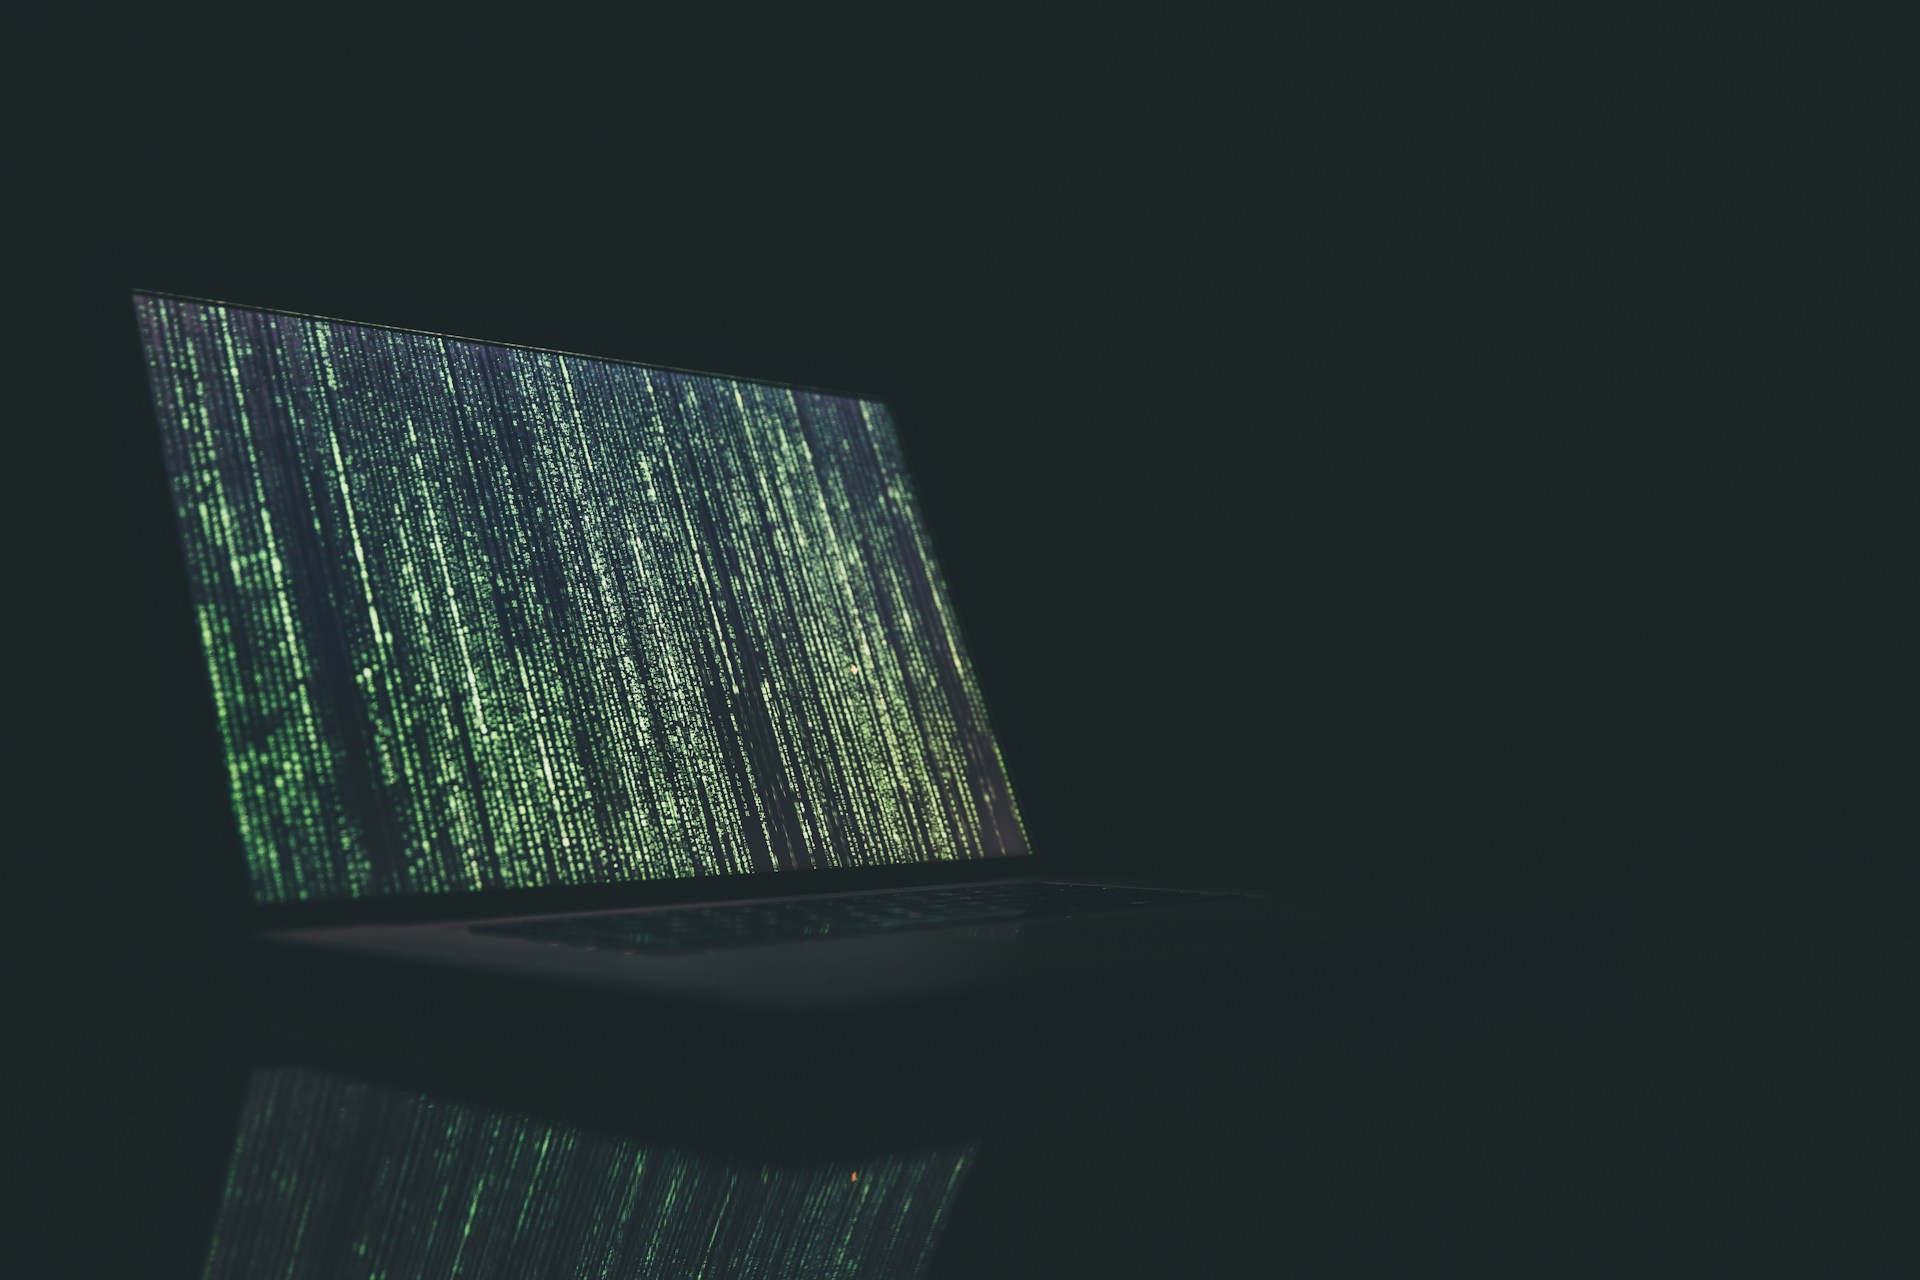 Matrix code running on a laptop